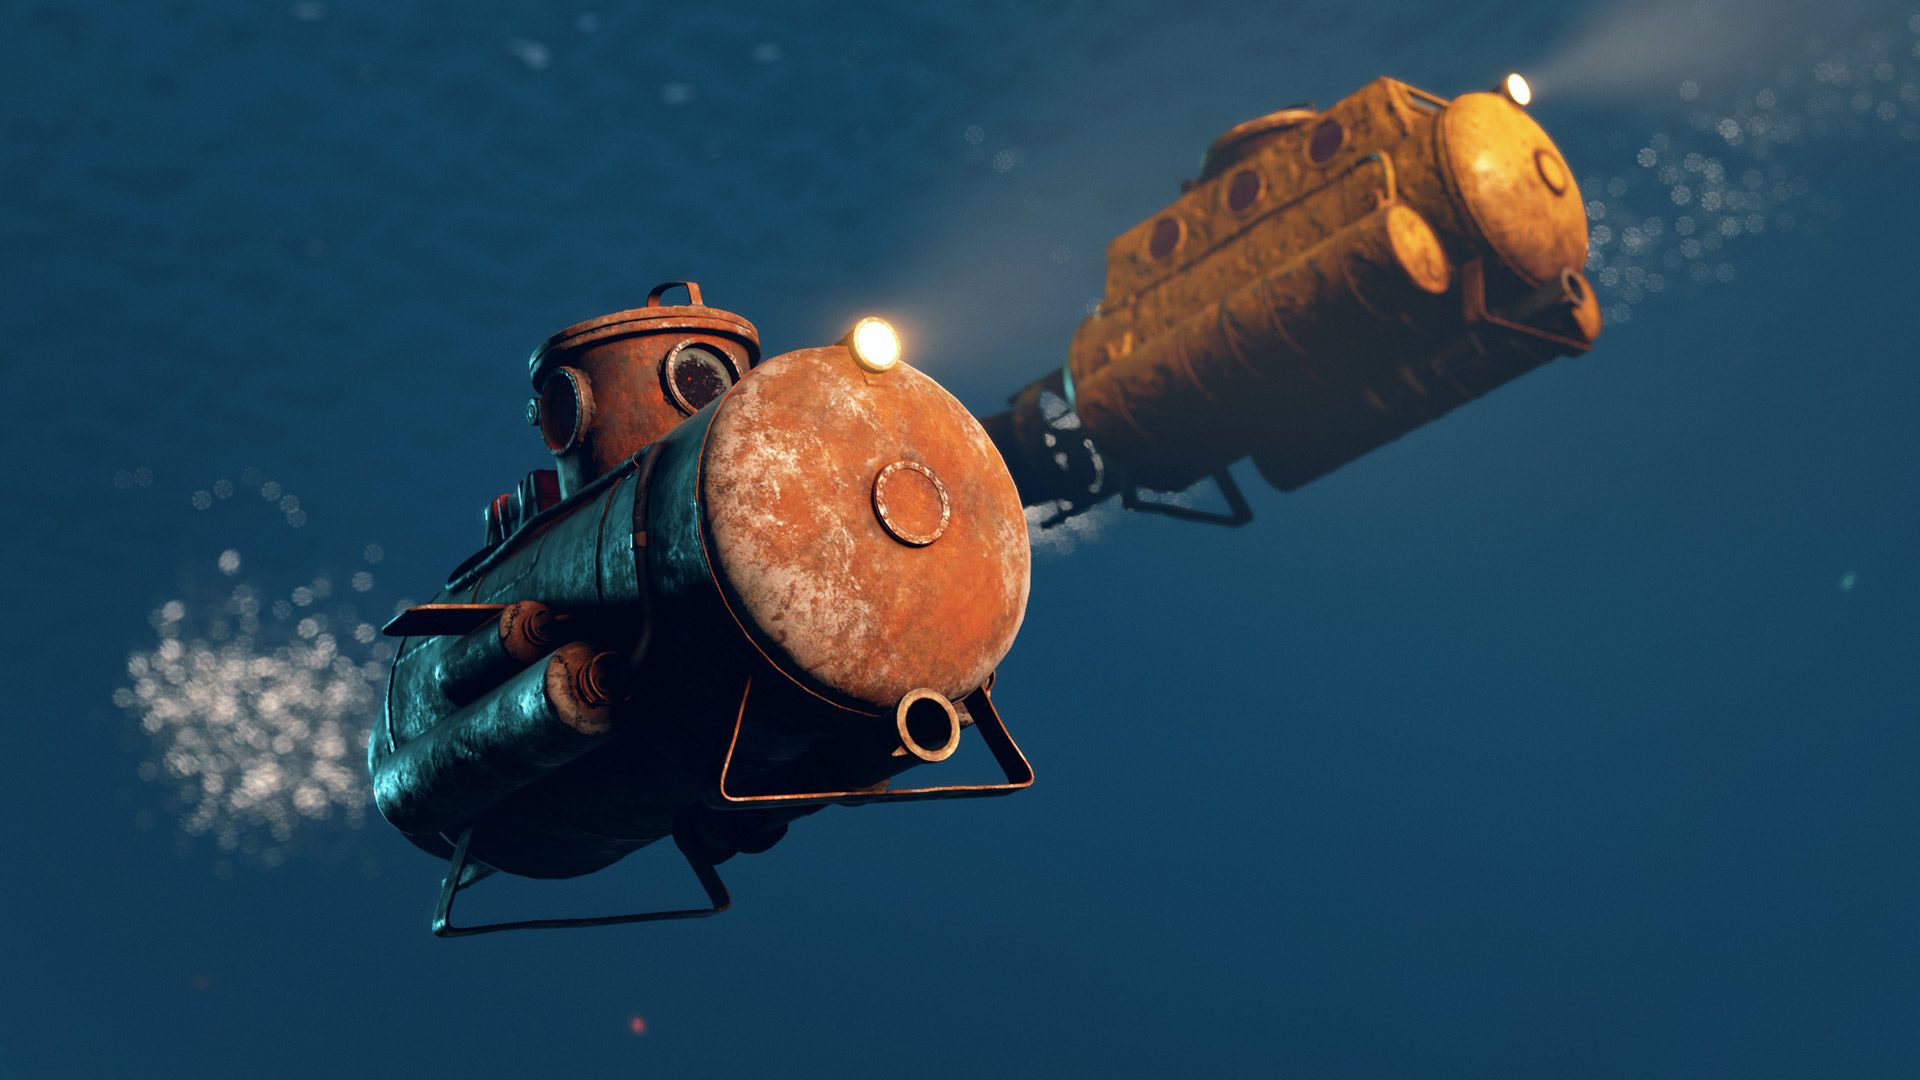 Rust submarine and shark